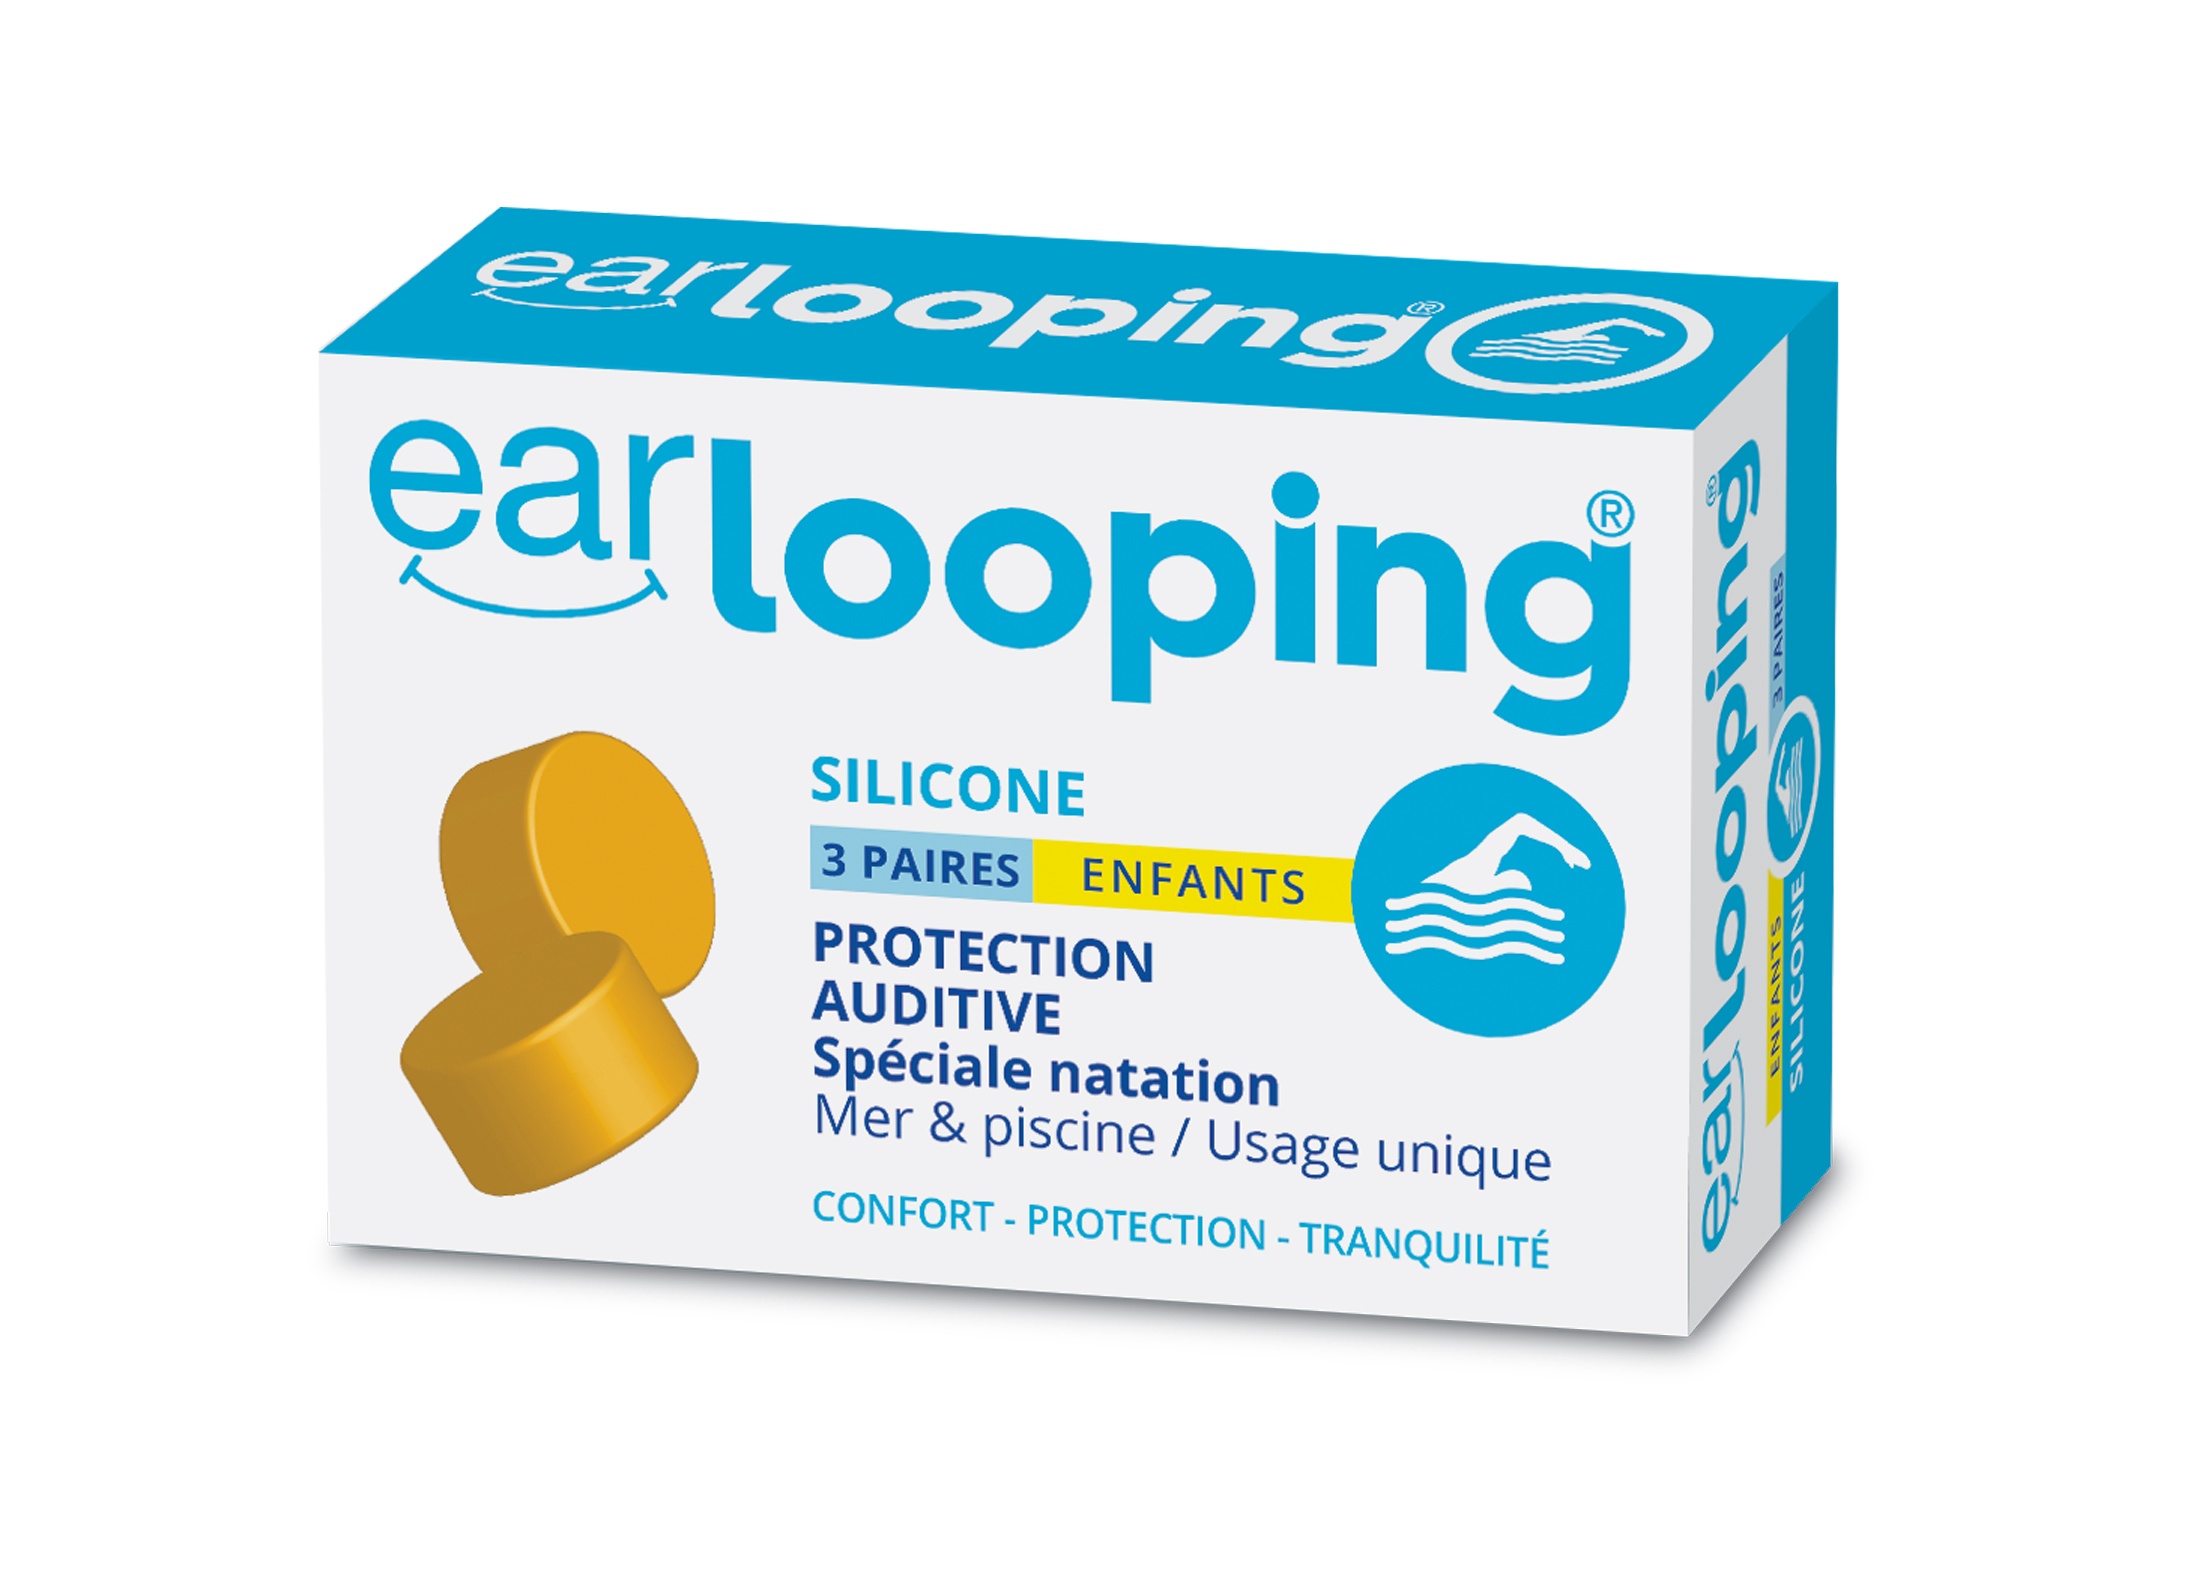 Les bouchons d’oreilles en silicone, spécial natation, boîte 3 paires - ENFANTS